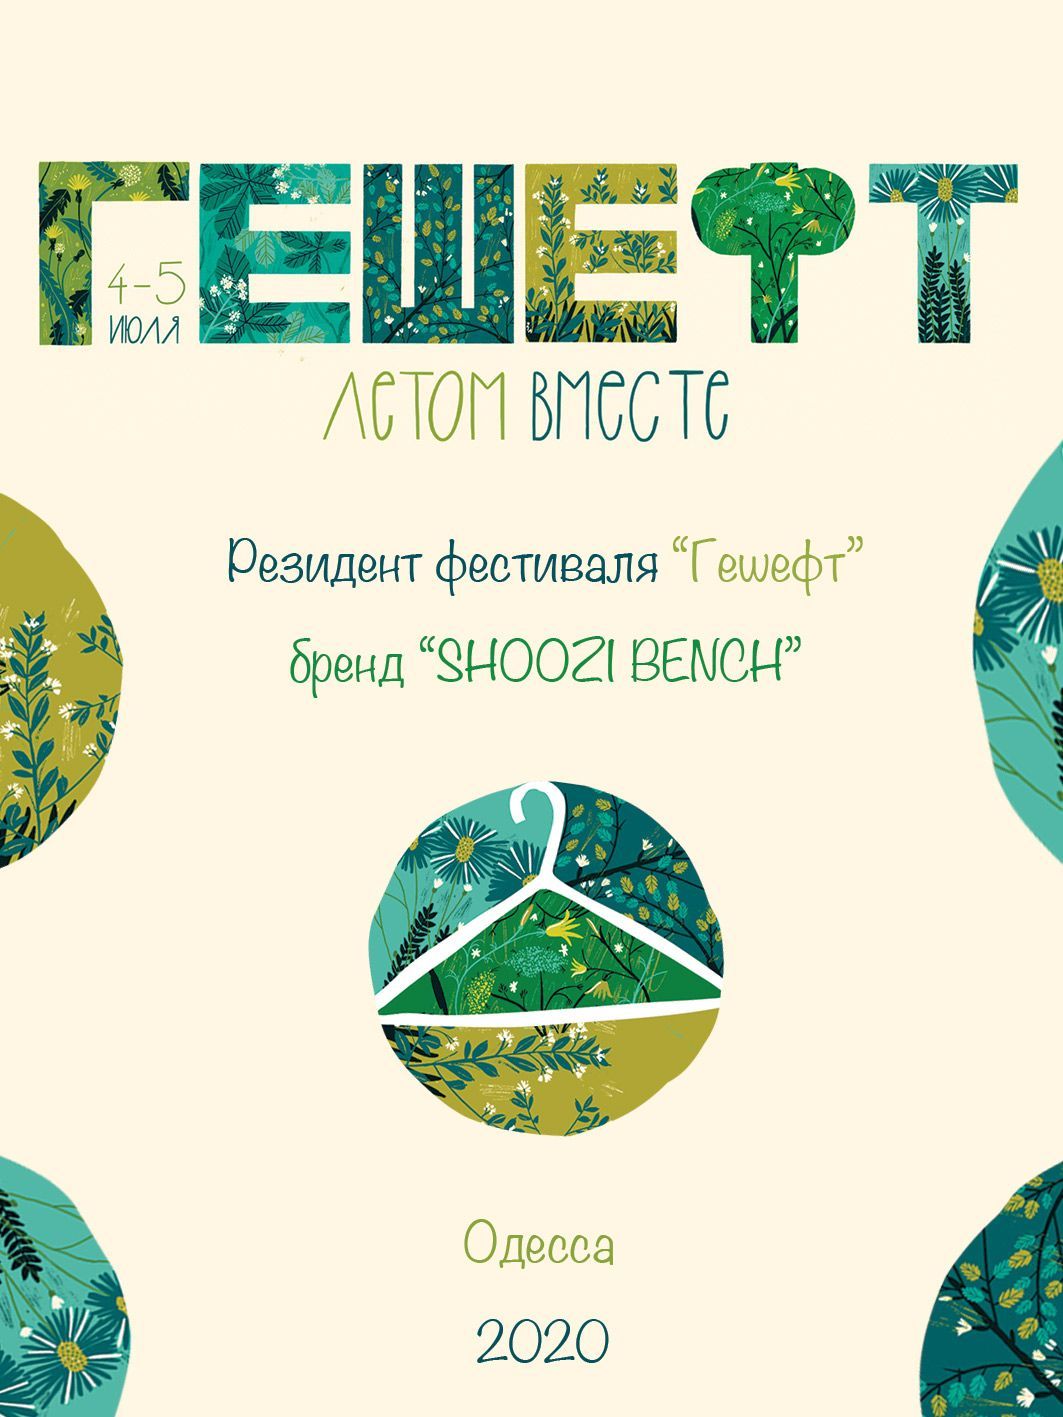 Сертификат участия в маркете "ГЕШЕФТ"